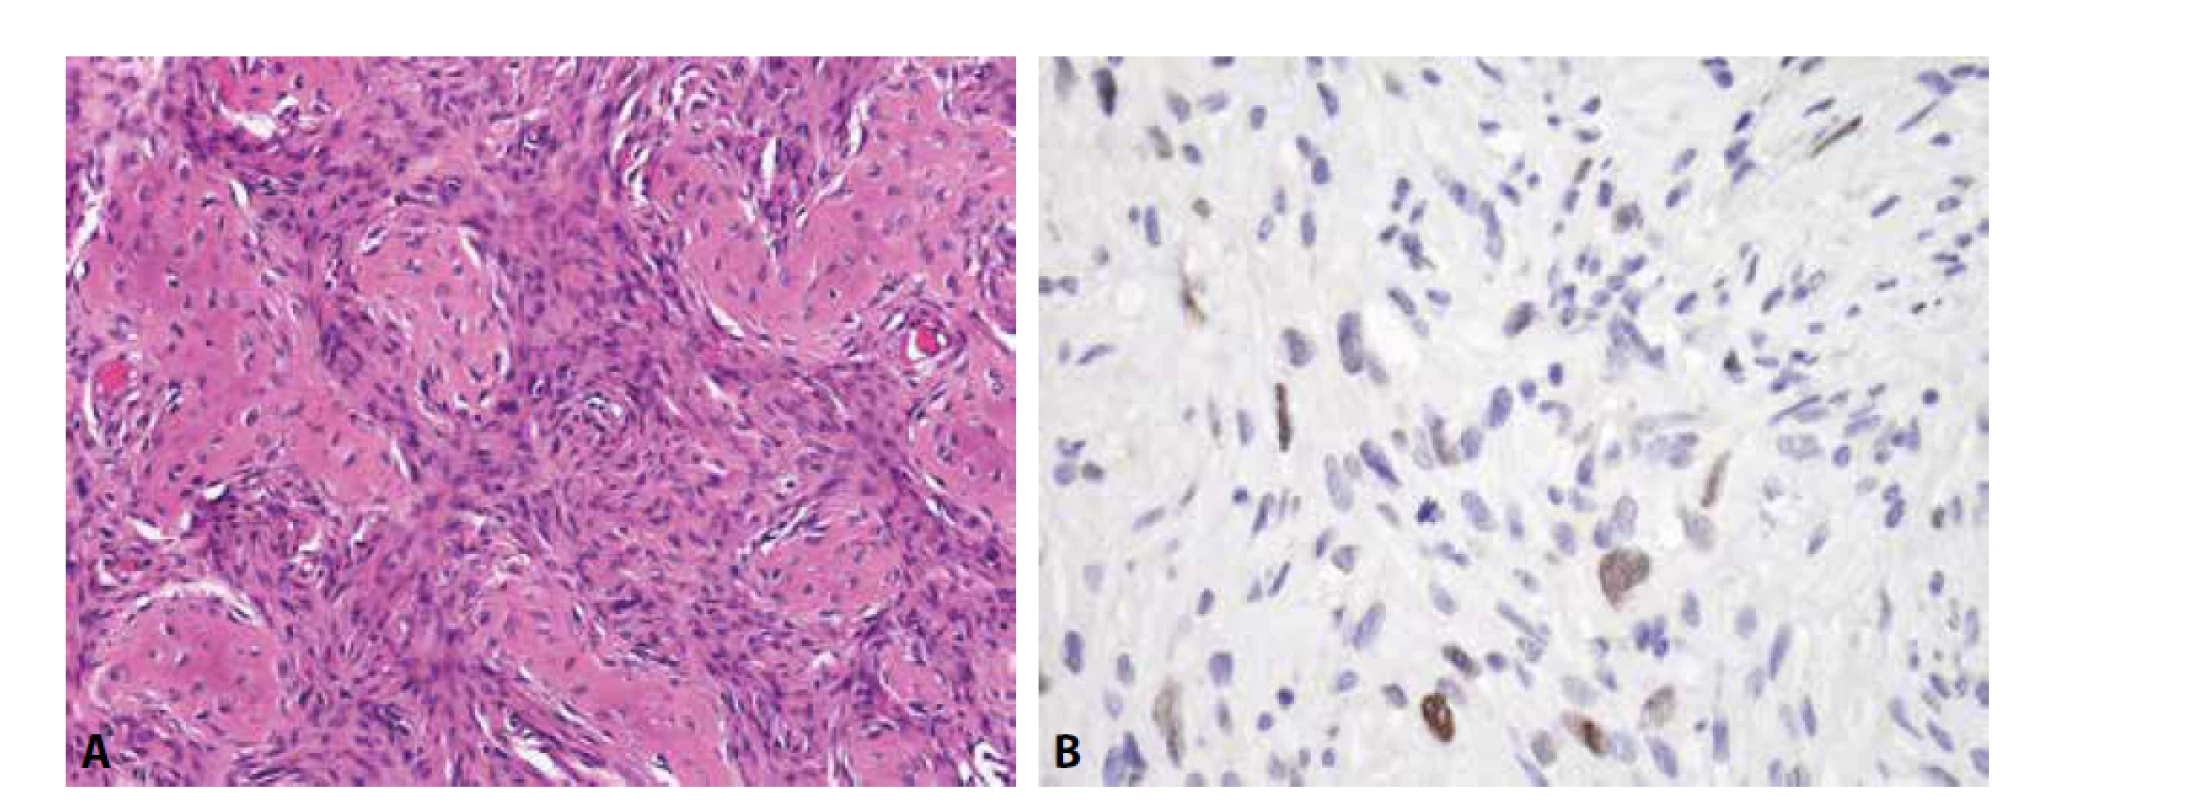 Low-grade centrální osteosarkom. A) oproti fibrózní dysplázii je tumor celulárnější (H&E); B) sporadická exprese MDM2 v oválných
buňkách (zvětšení x 200).